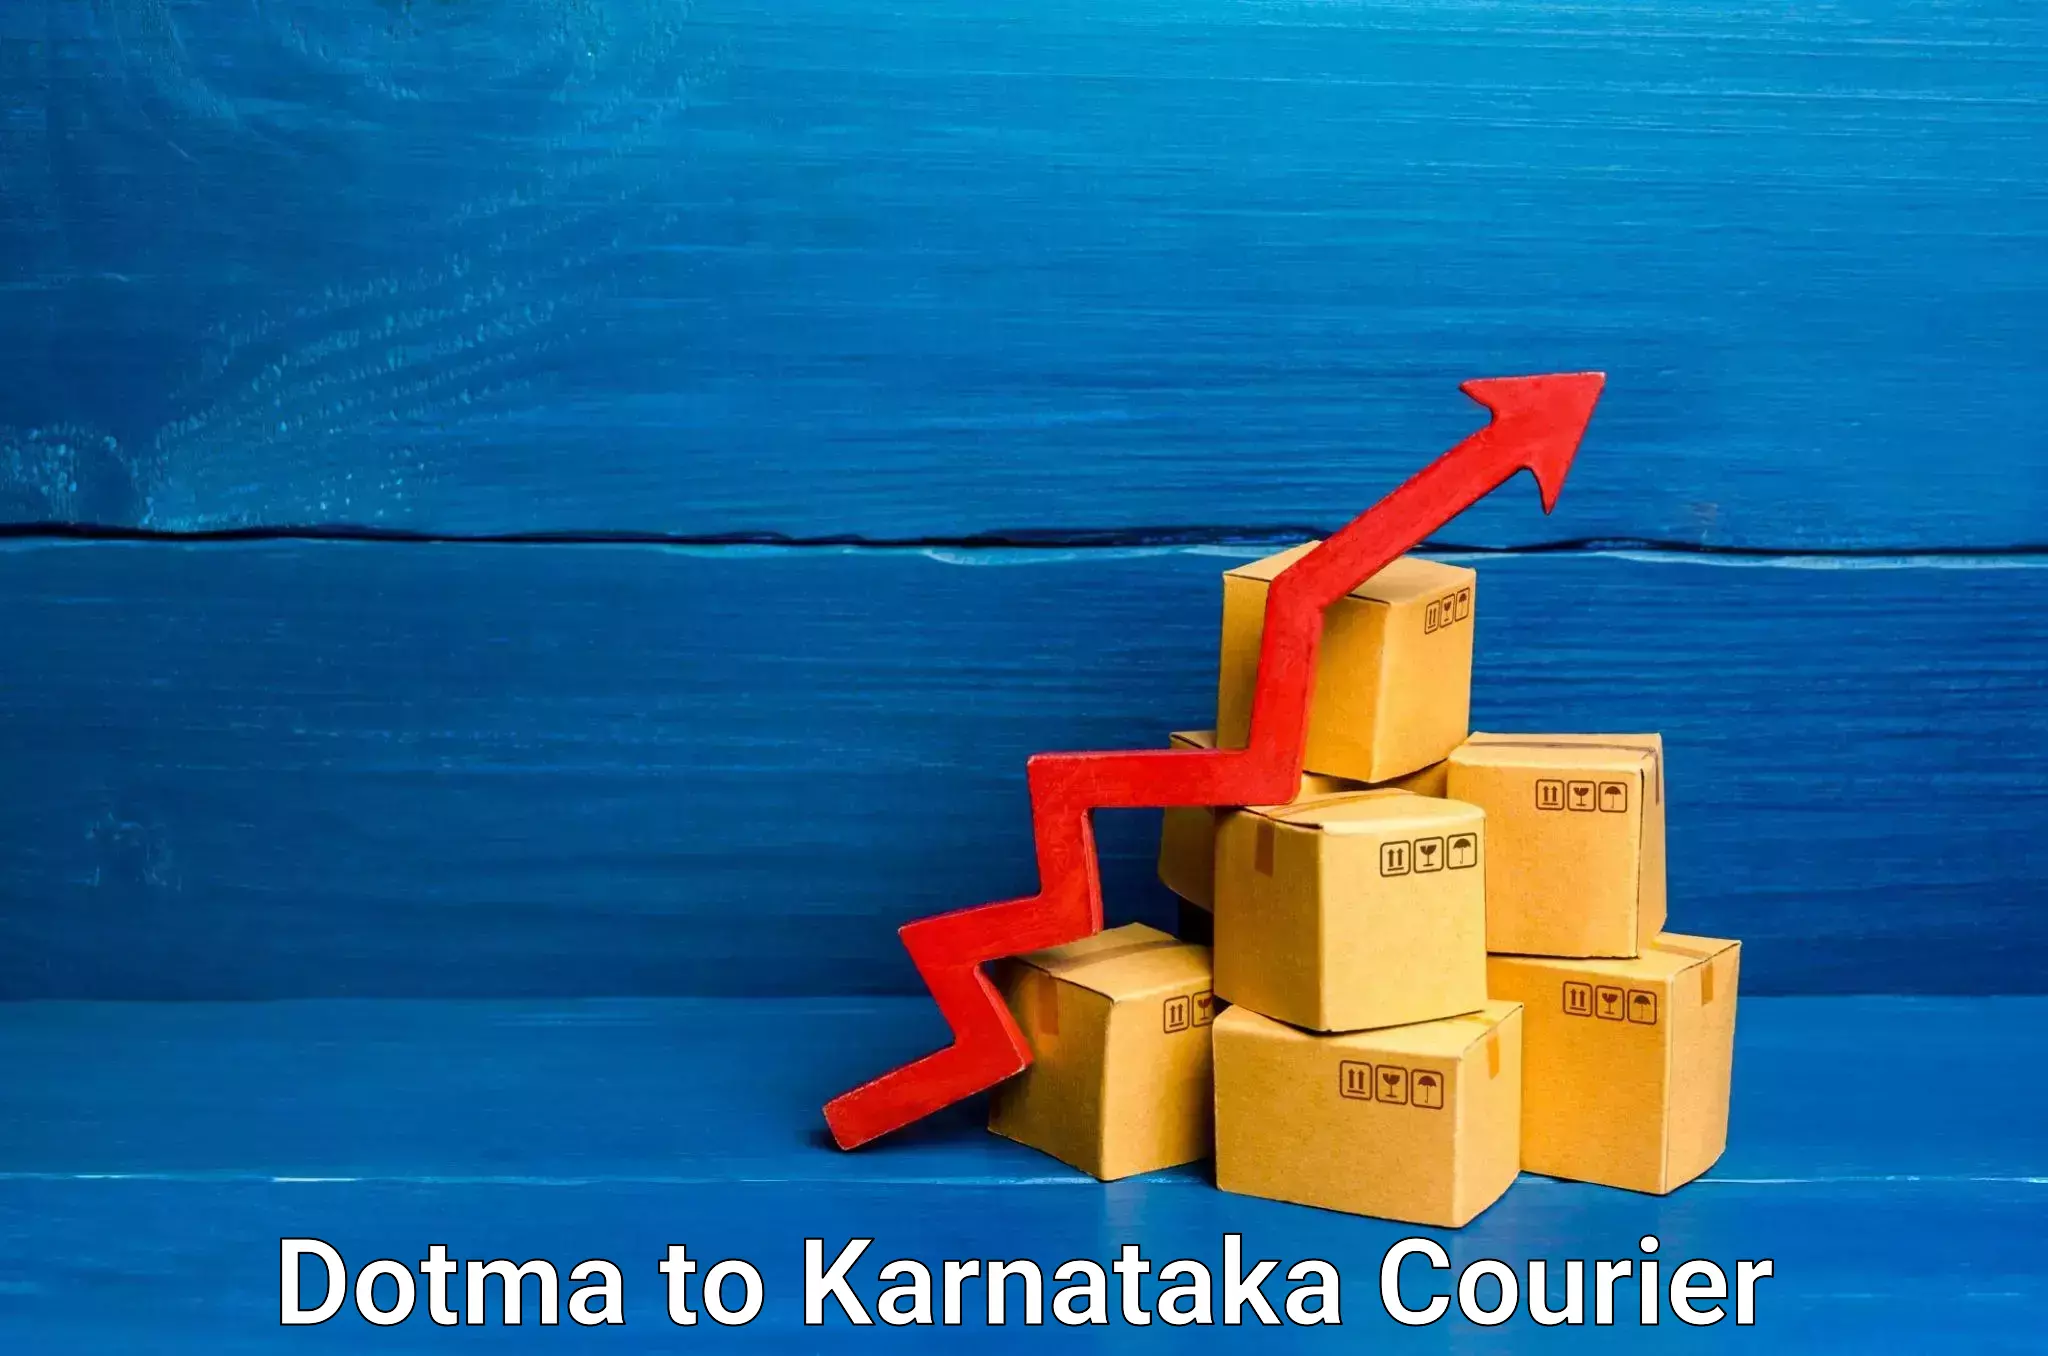 Easy return solutions Dotma to Karnataka